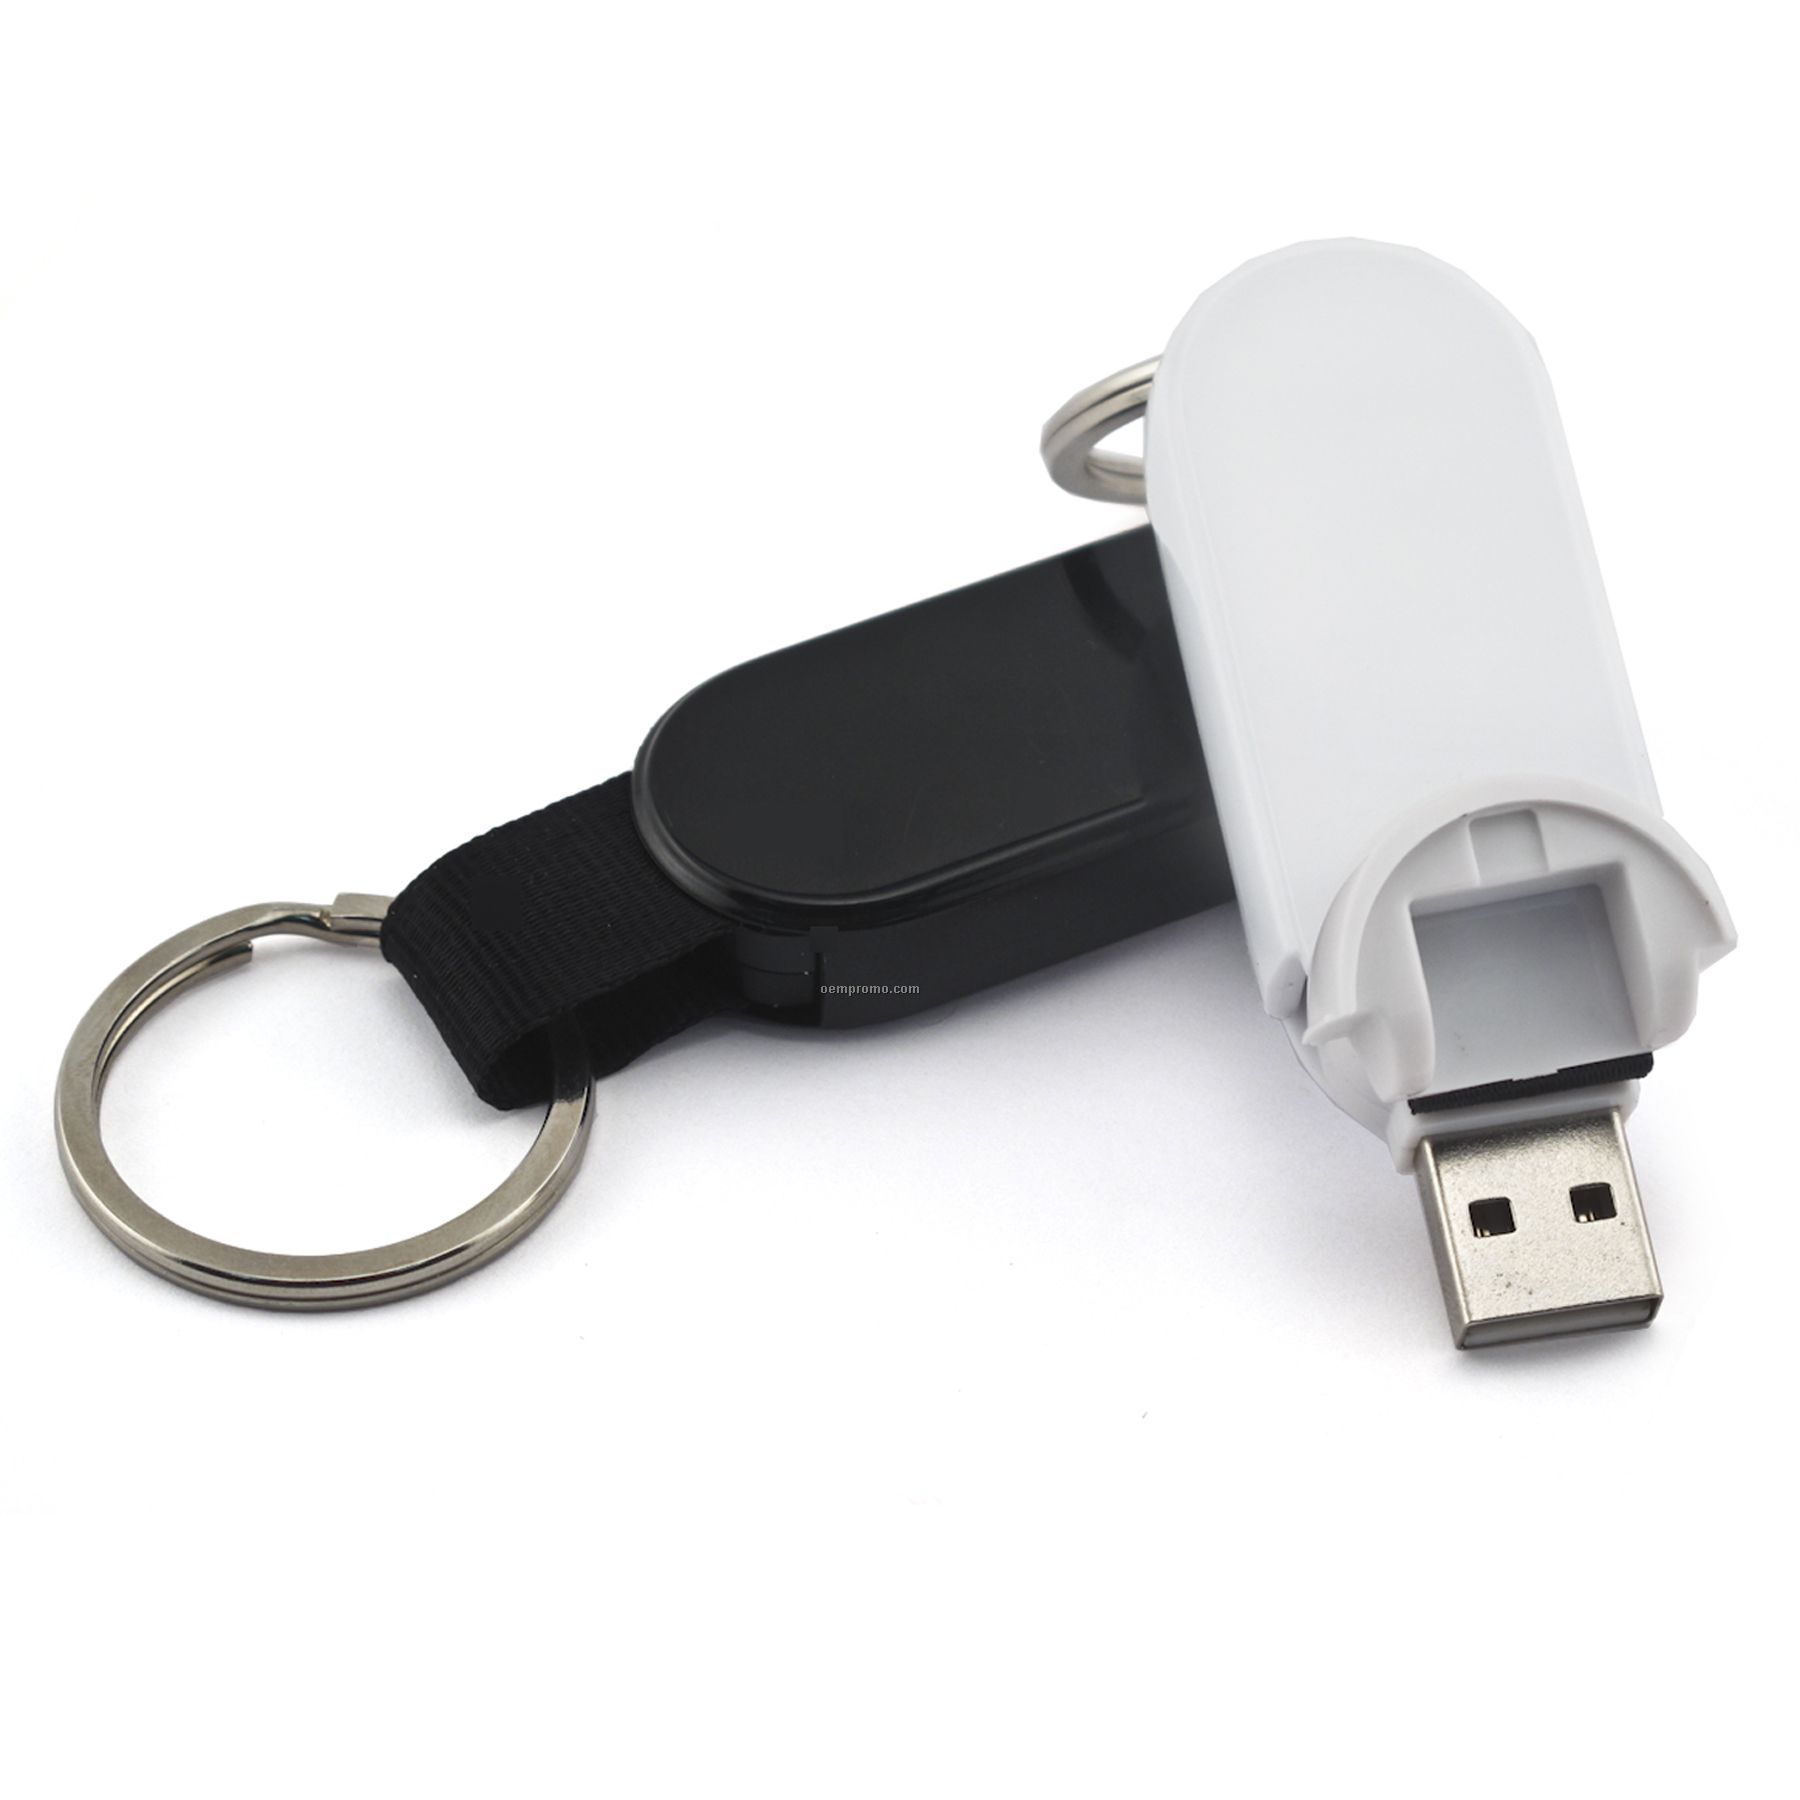 8 Gb Retractable USB Drive 700 Series